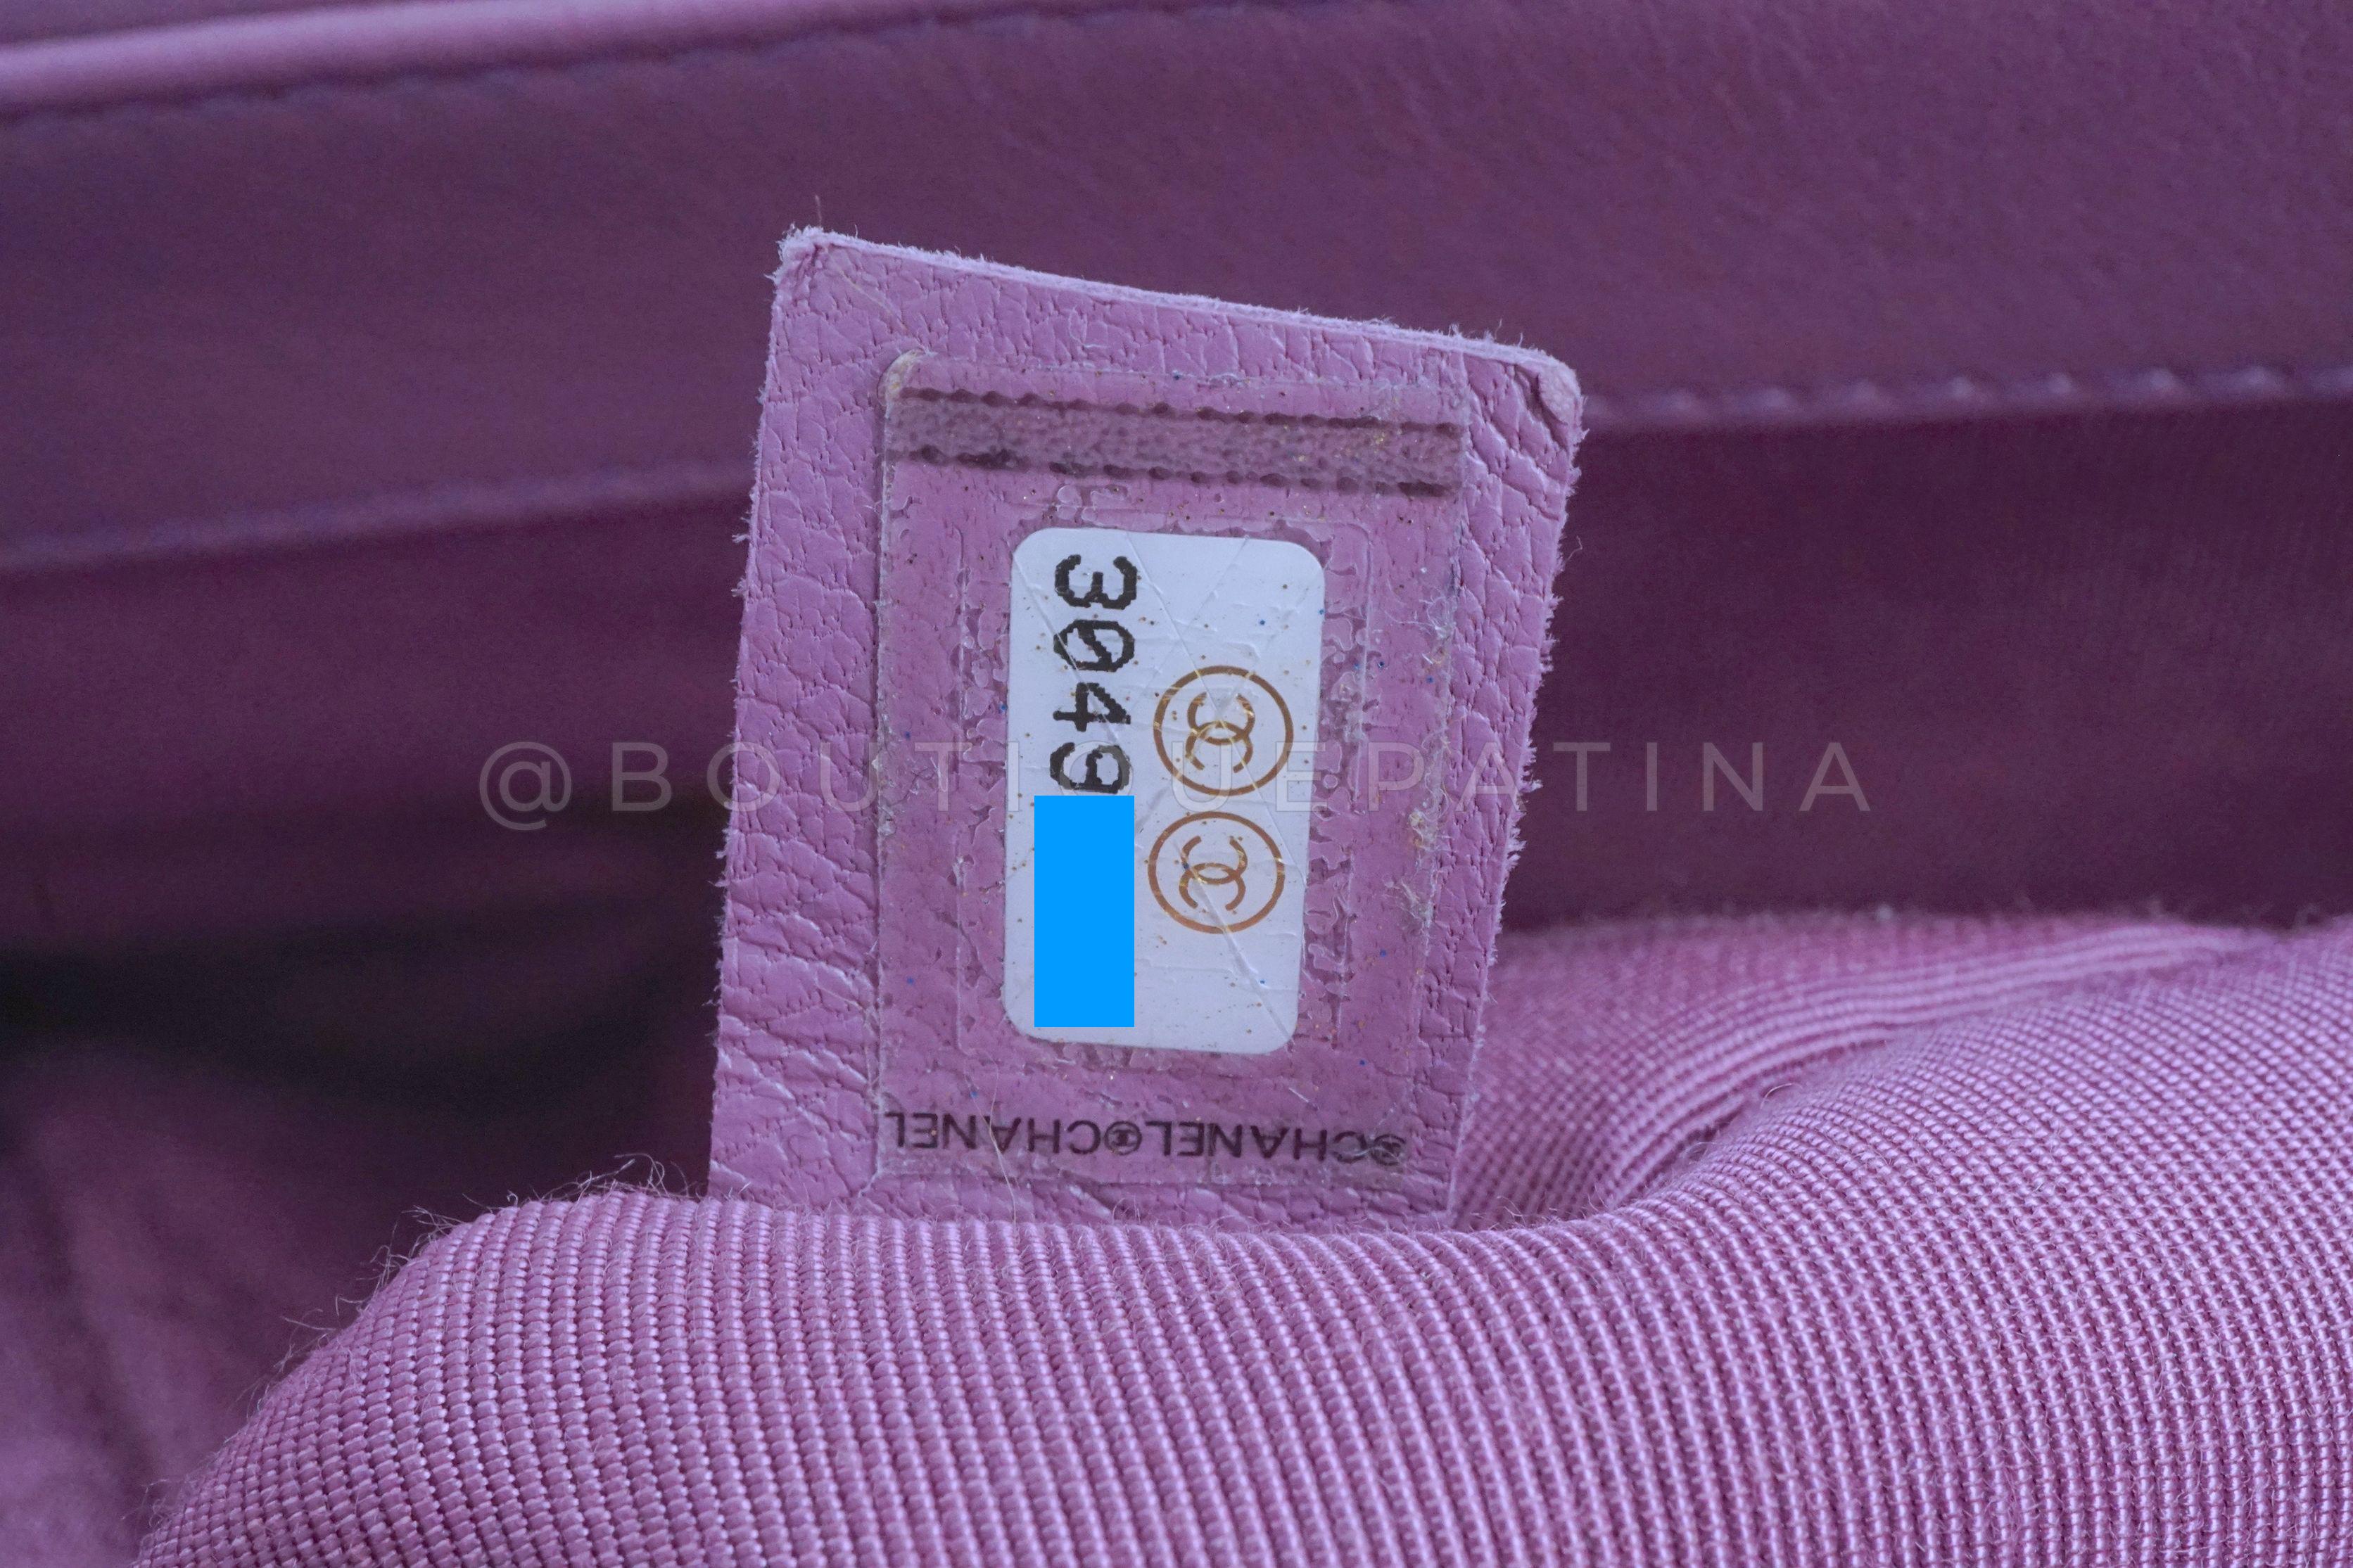 Chanel 19 20B Lavender Mauve Medium Flap Bag 65463 For Sale 6